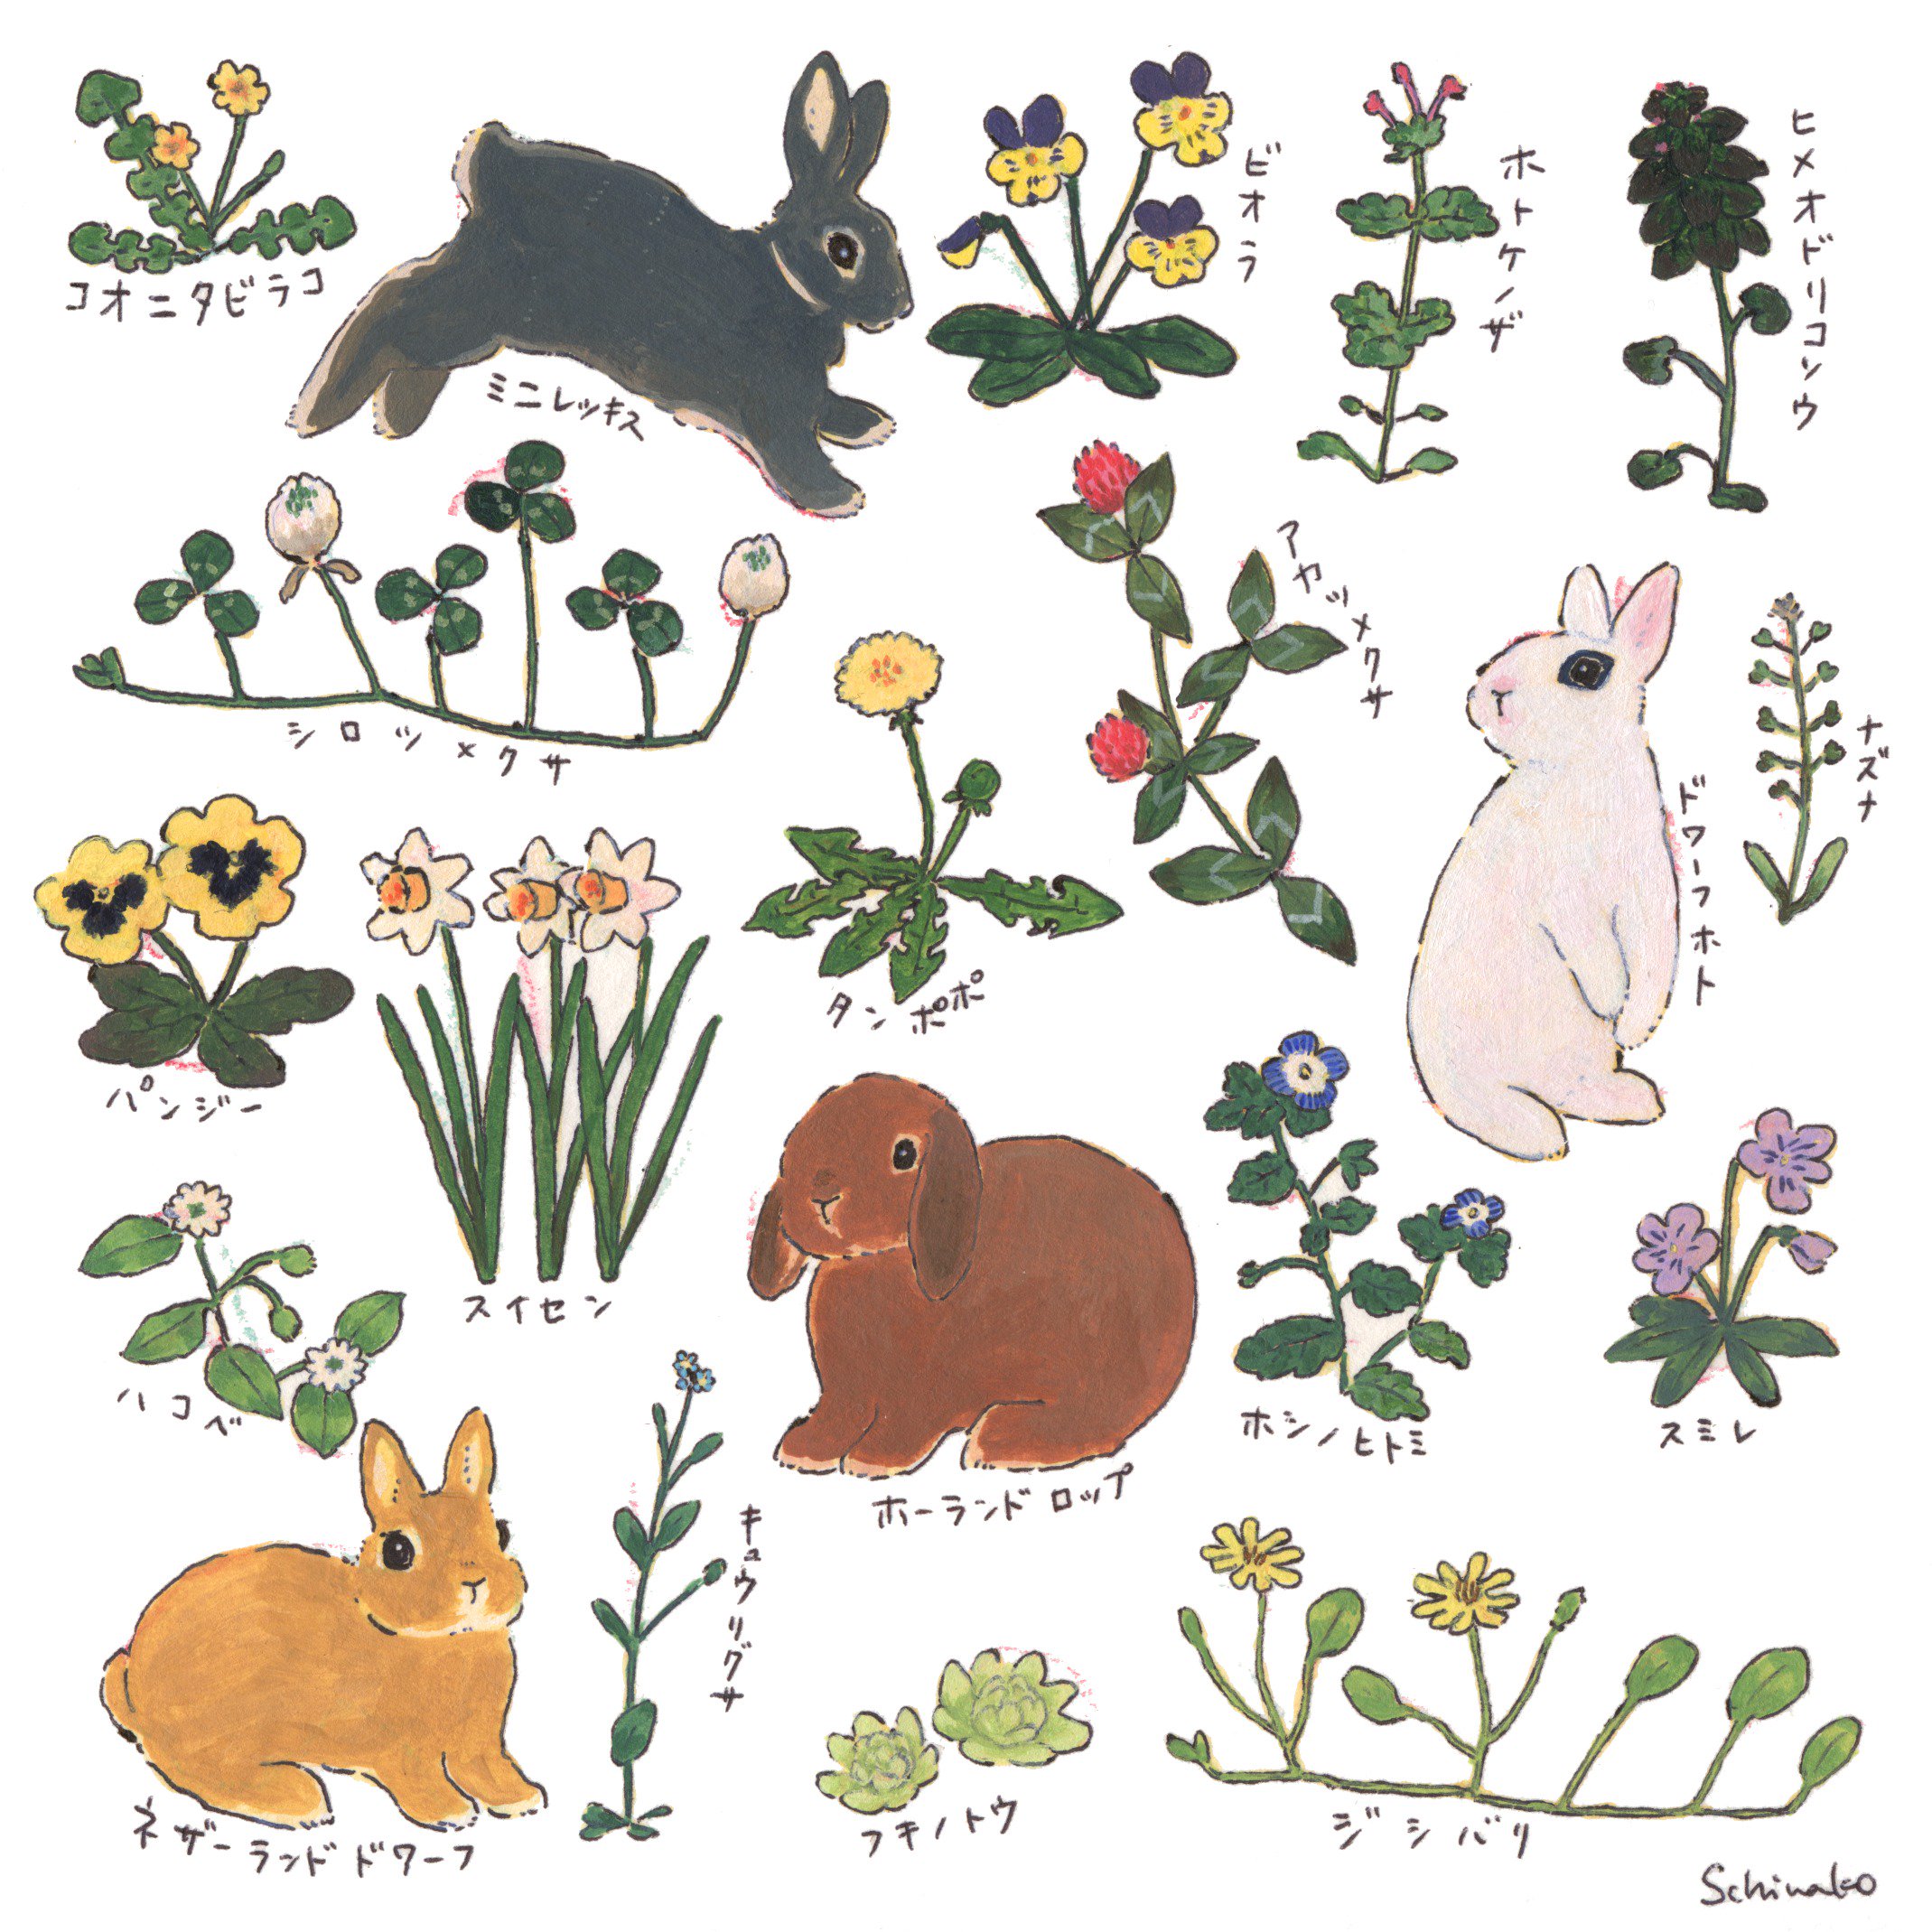 Schinako Moriyama Illustrator 左のは春の花とうさぎさん 食べられない植物も描いてる 右のは 食べられる植物とうさぎさん 季節は関係ない たまにおやつとして庭で安全に育てた野草とハーブをあげています 野草を食べているブランはちょっとだけ